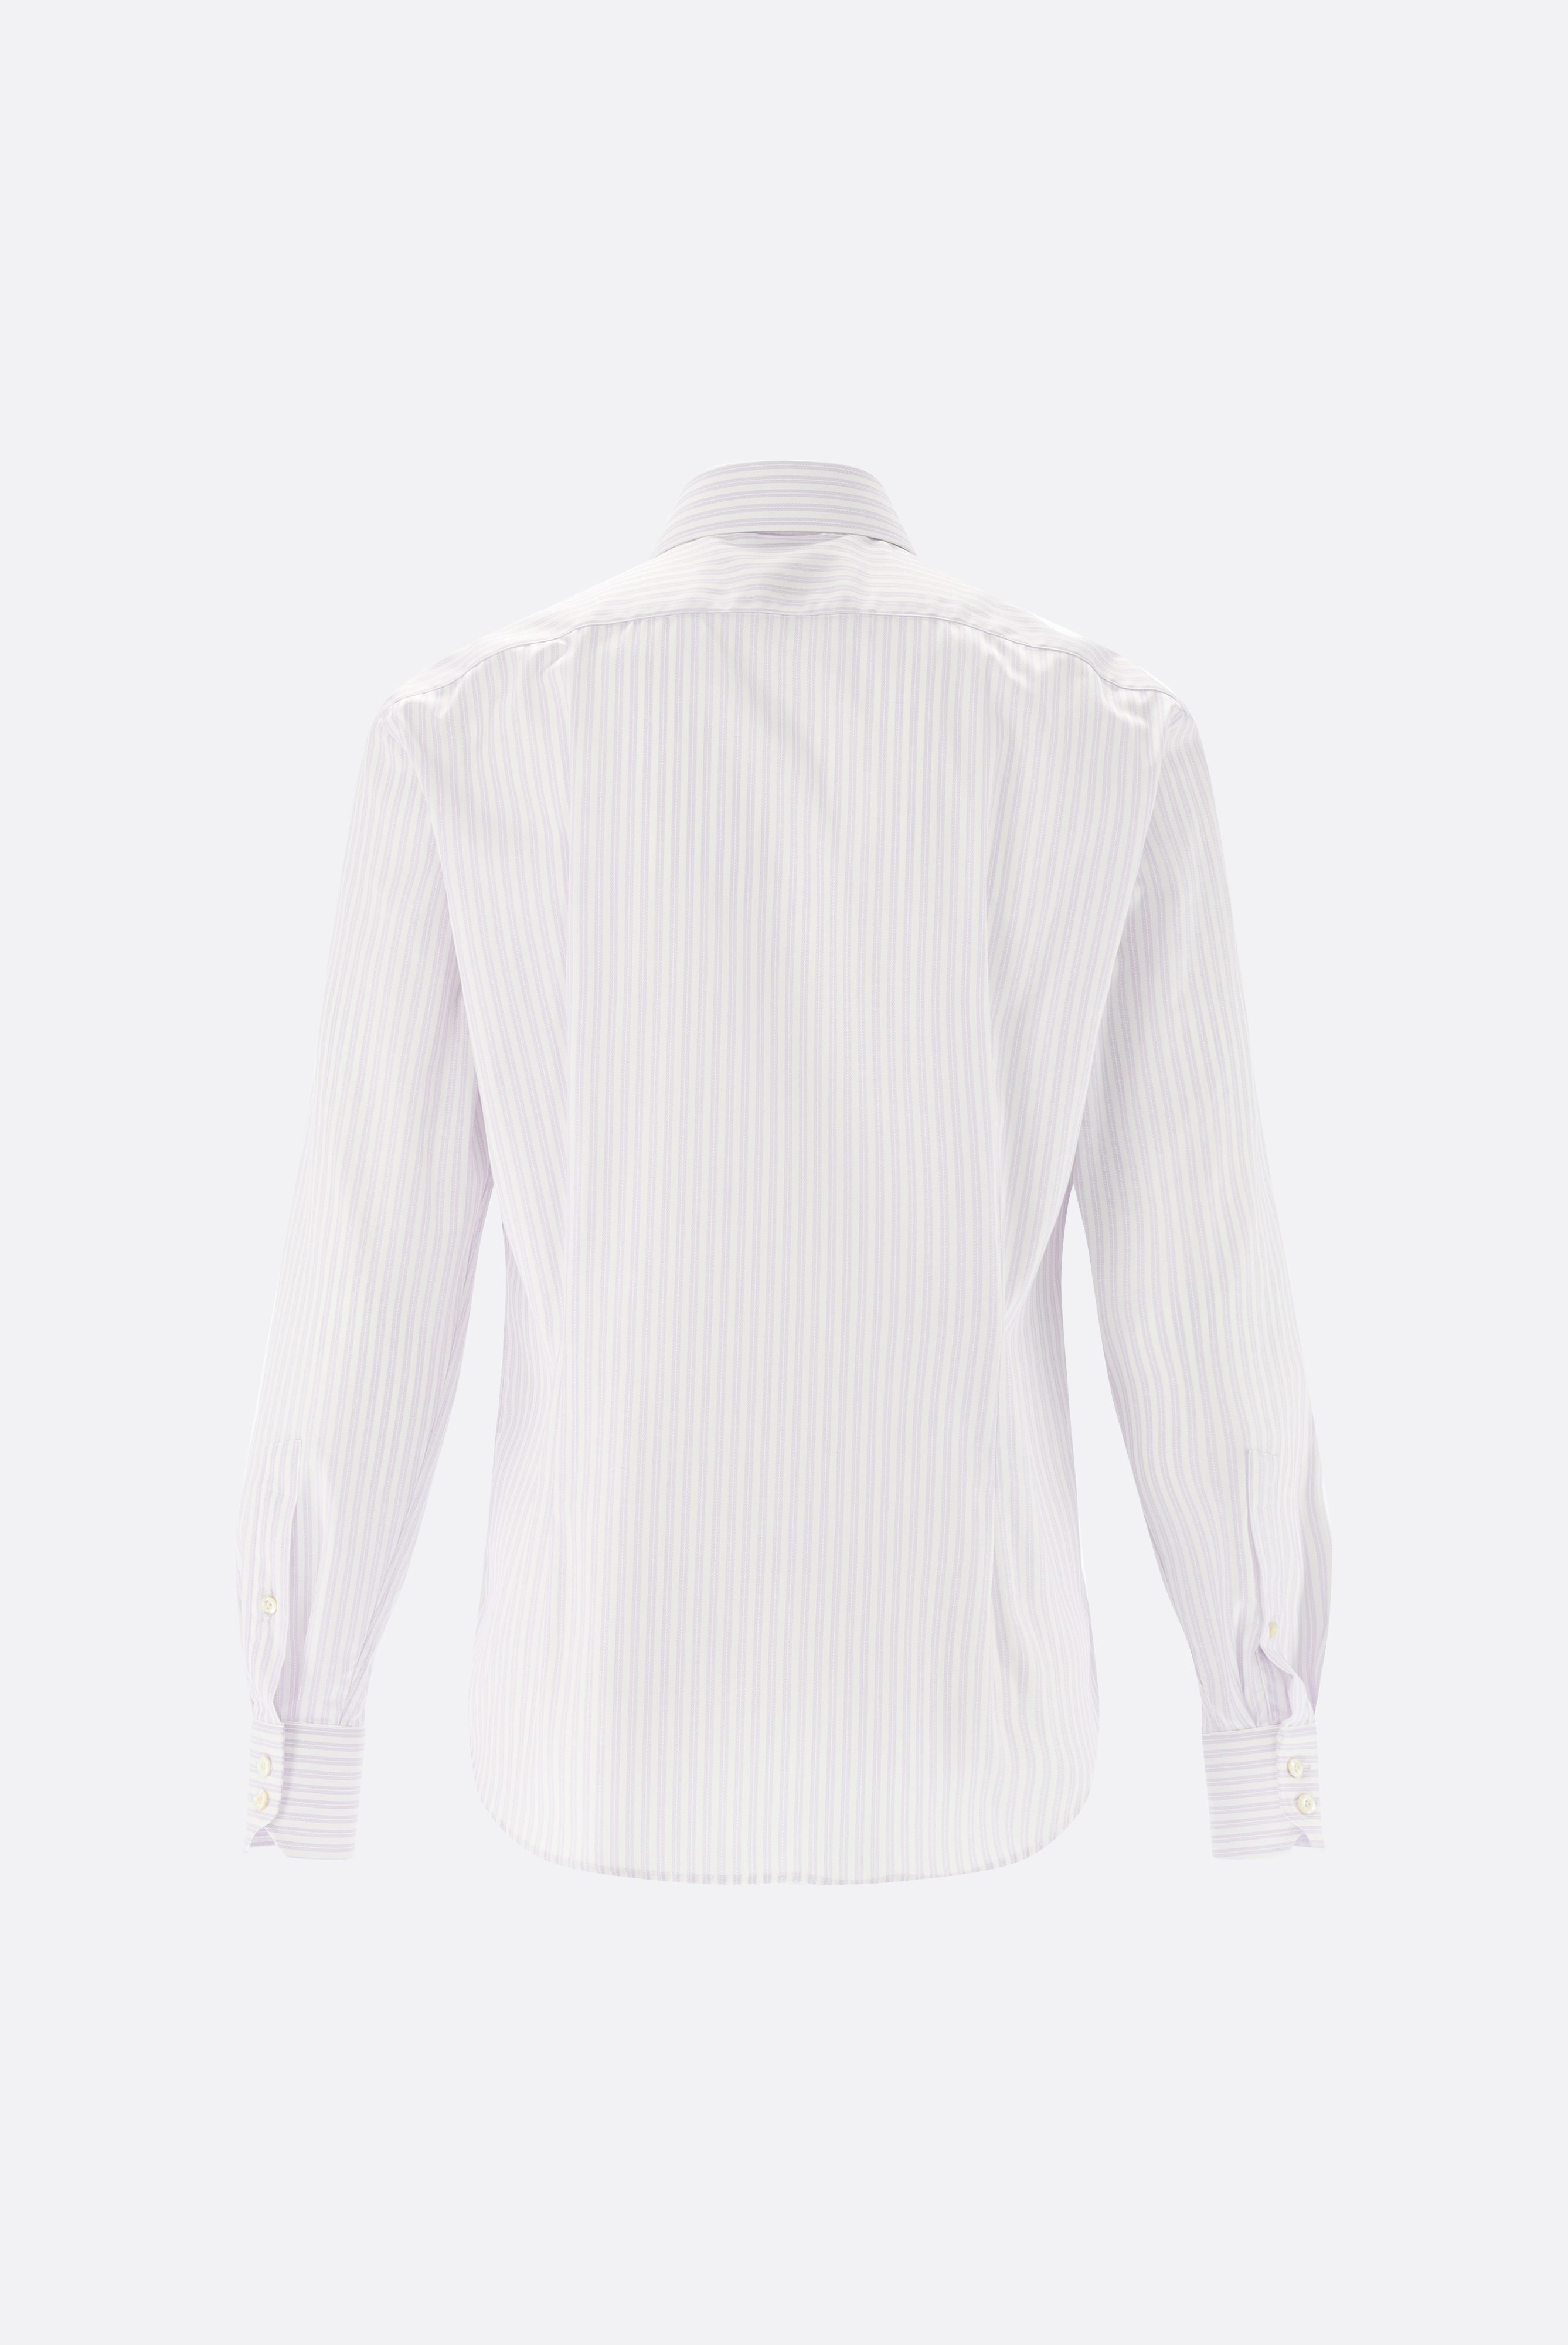 Bügelleichte Hemden+Bügelfreies Hemd mit Streifen Slim Fit+20.2019.BQ.161106.006.38